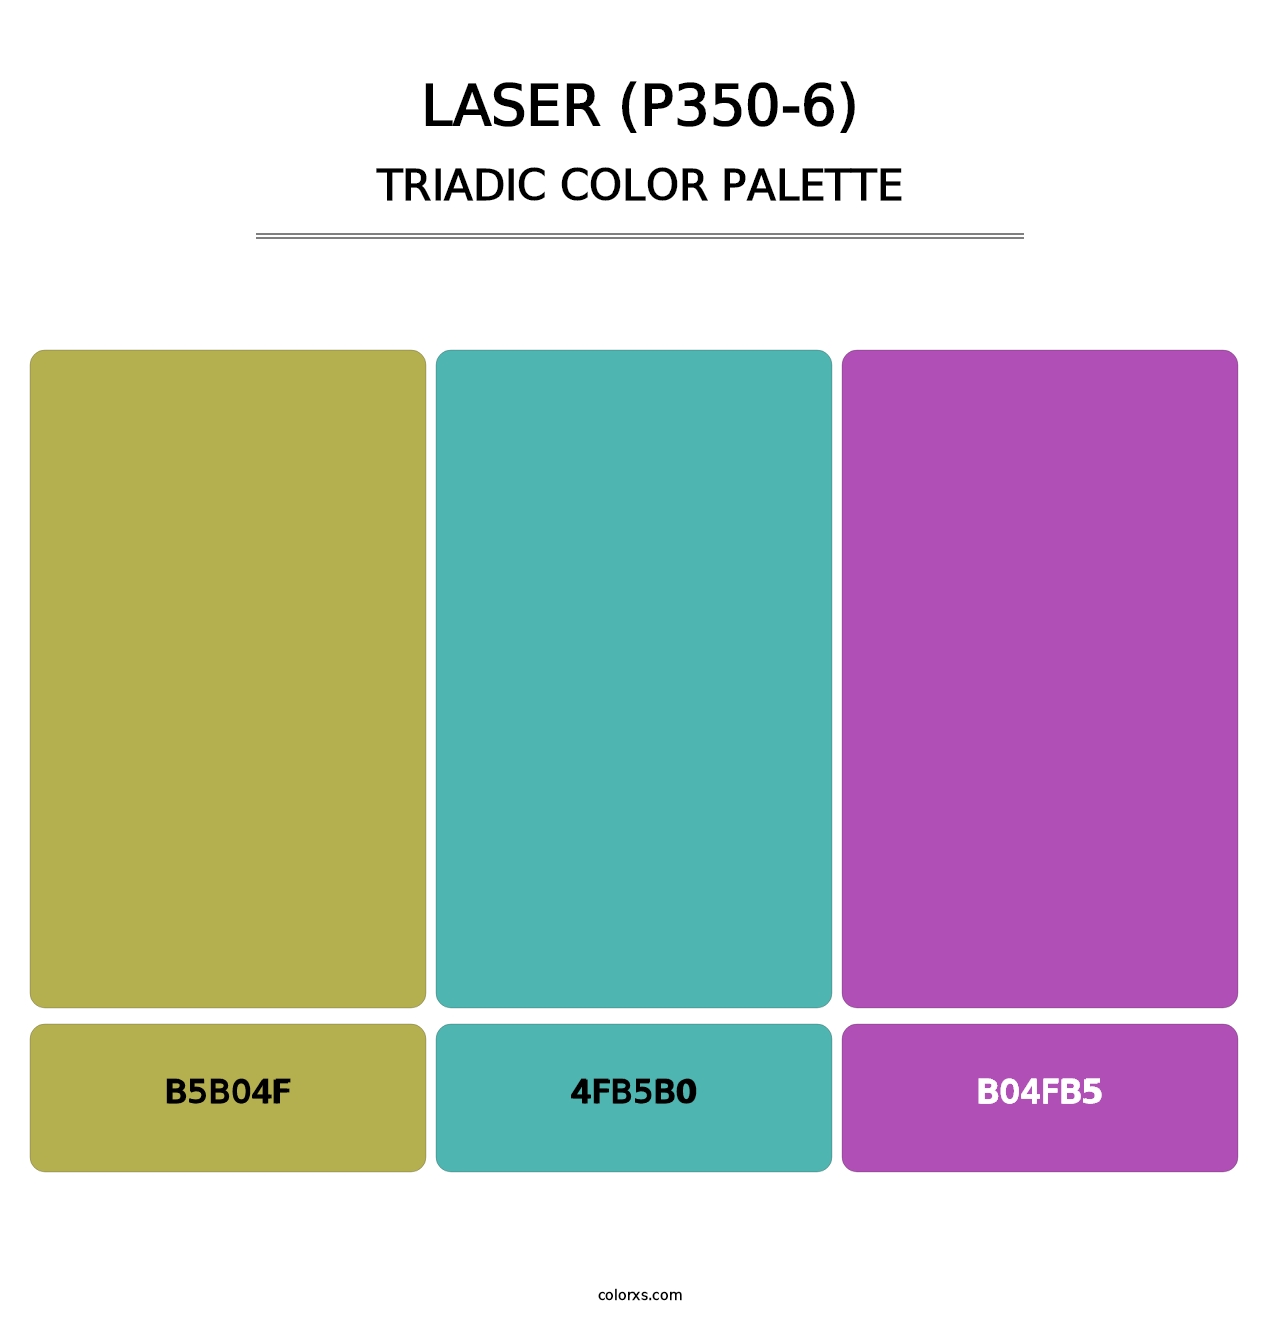 Laser (P350-6) - Triadic Color Palette